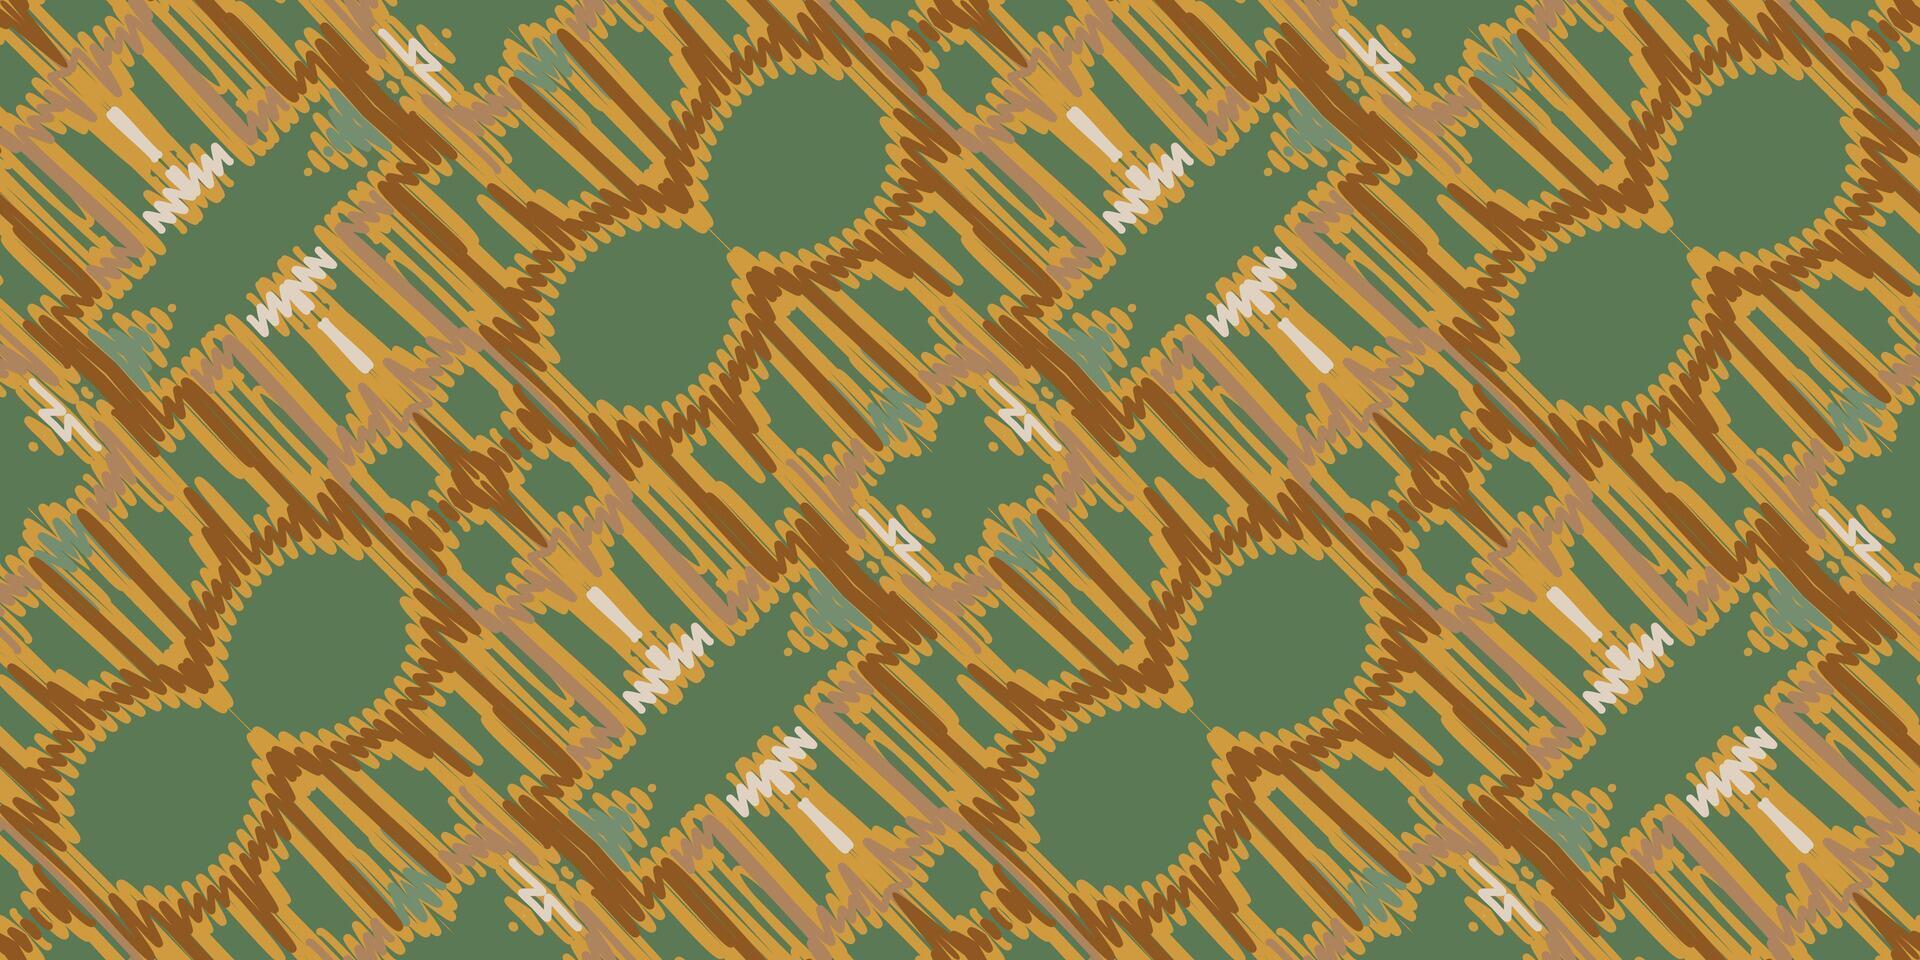 ikat bloemen paisley borduurwerk Aan wit achtergrond.ikat etnisch oosters patroon traditioneel.azteken stijl abstract vector illustratie.ontwerp voor textuur,stof,kleding,verpakking,decoratie,sjaal,tapijt